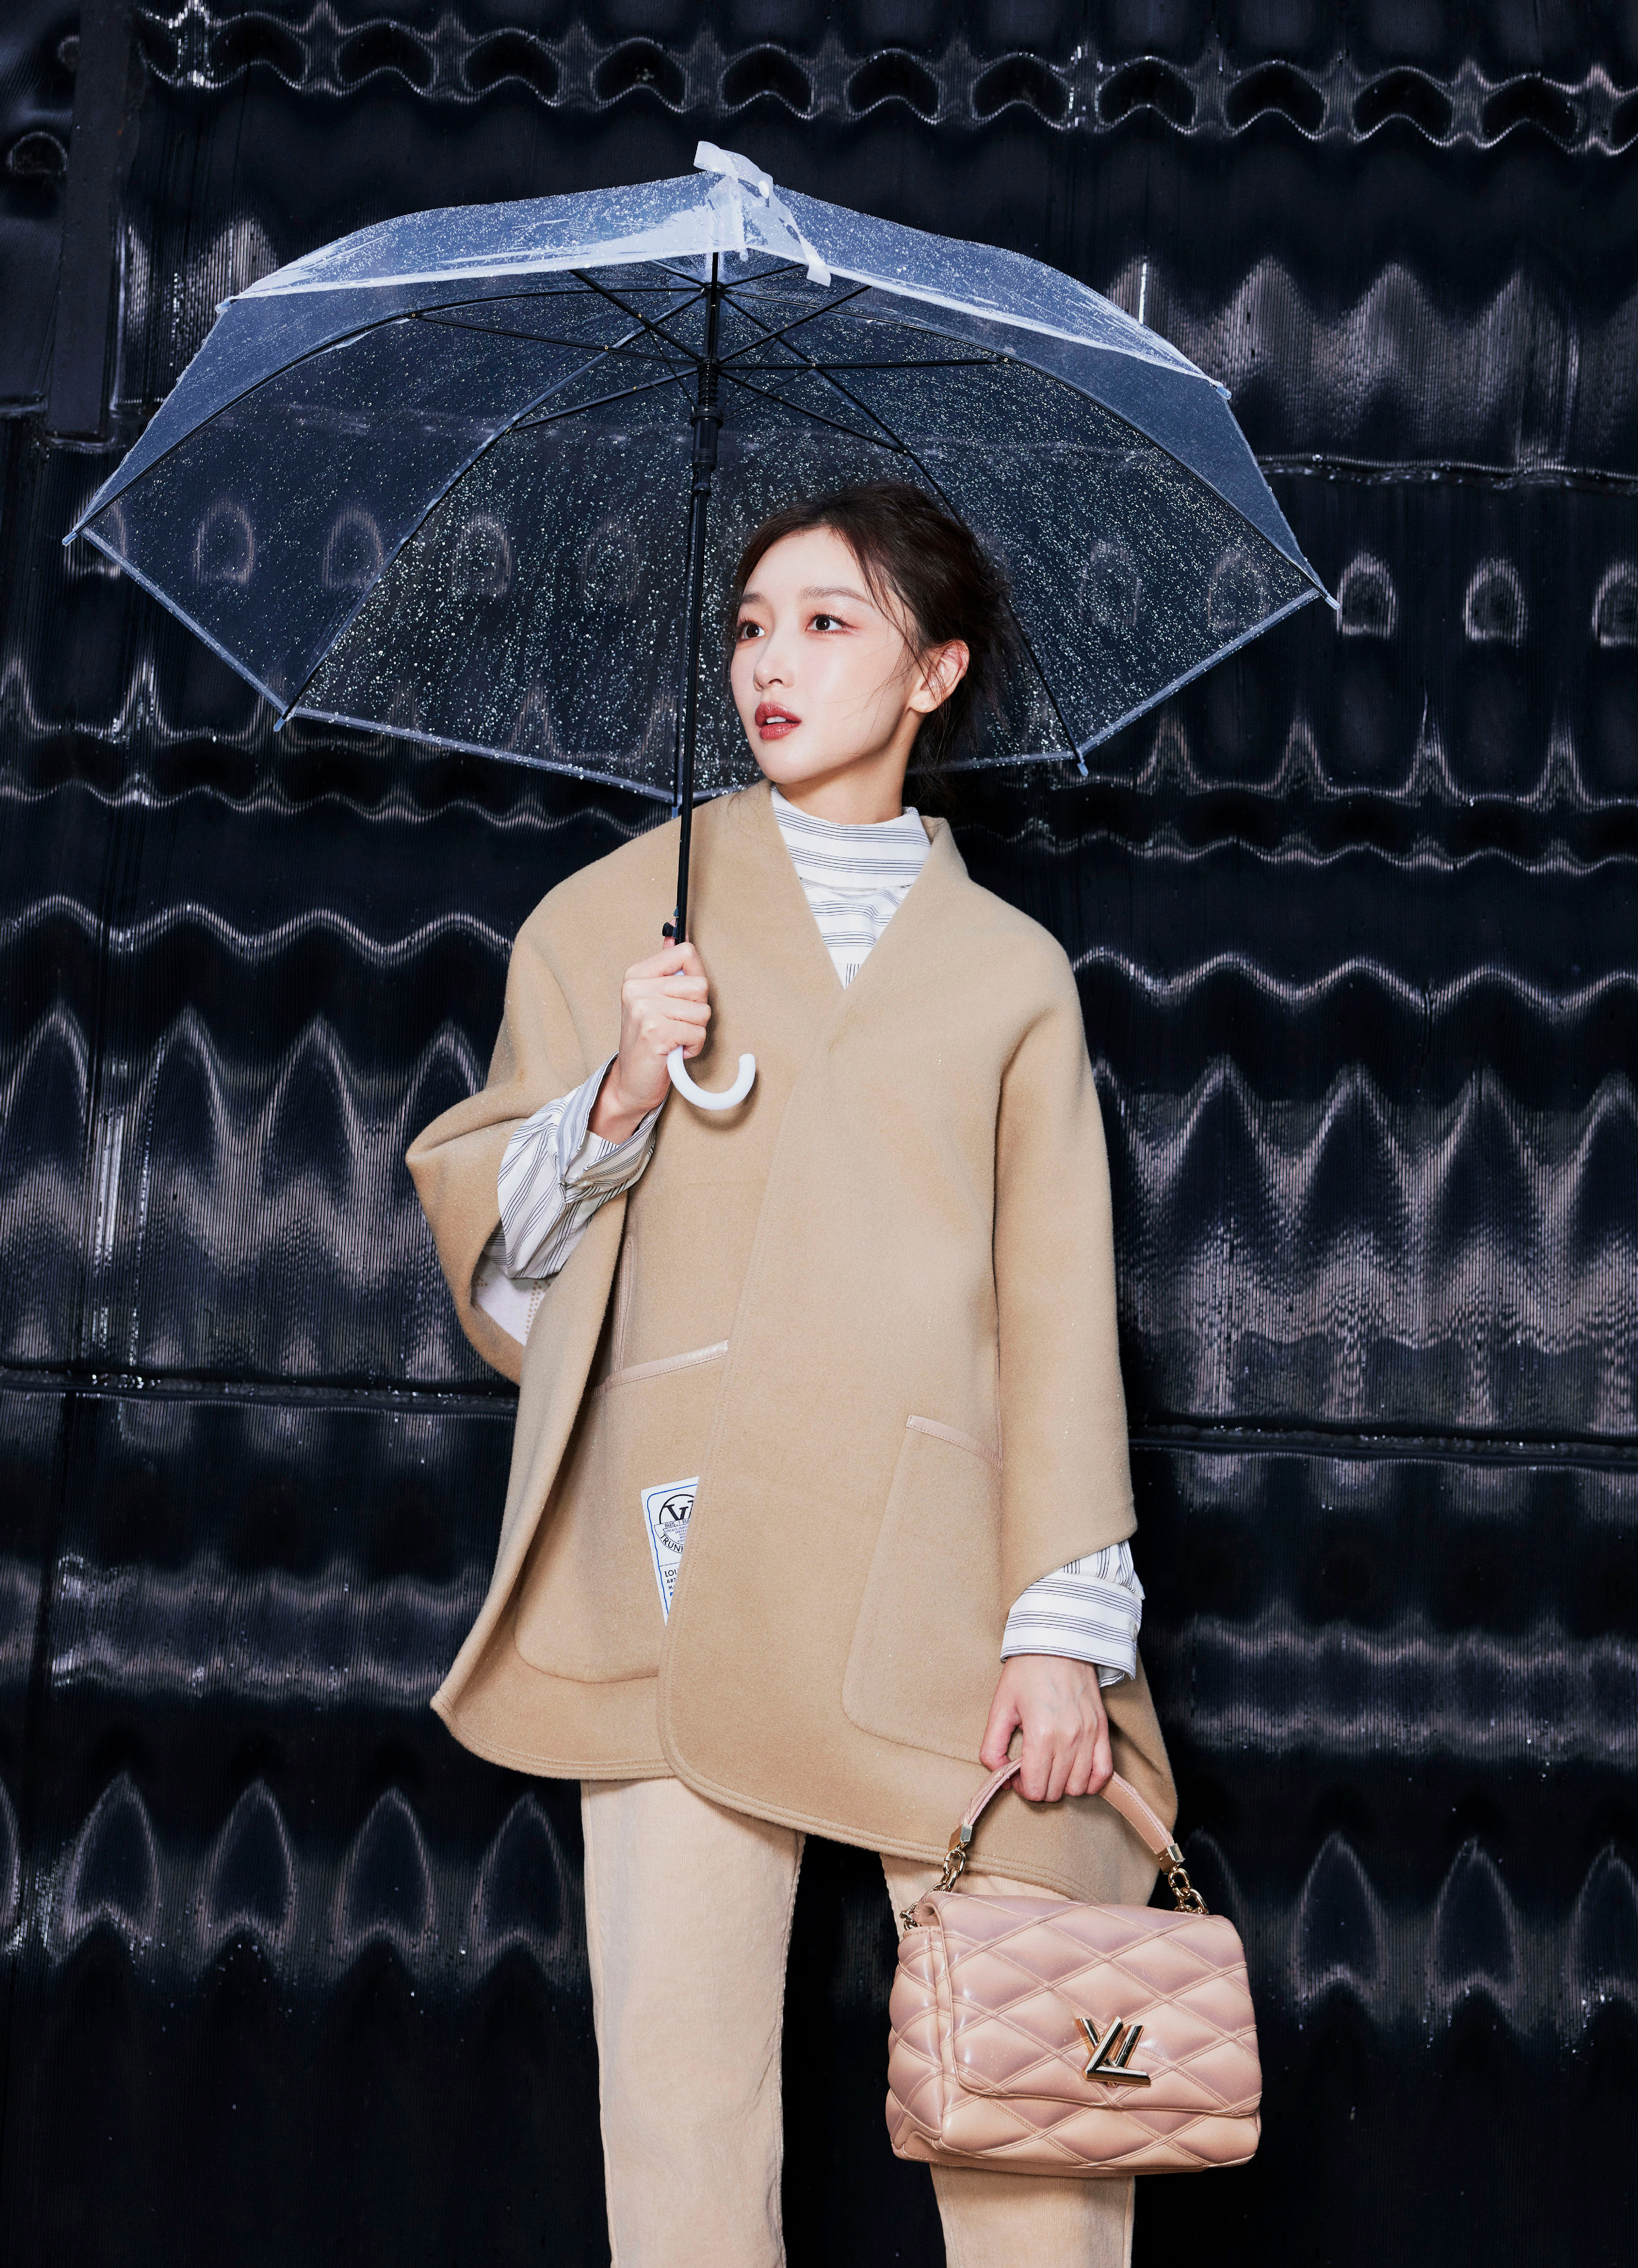 周冬雨亮相巴黎时装周 棕色系穿搭时尚感十足 单手撑伞轻松惬意